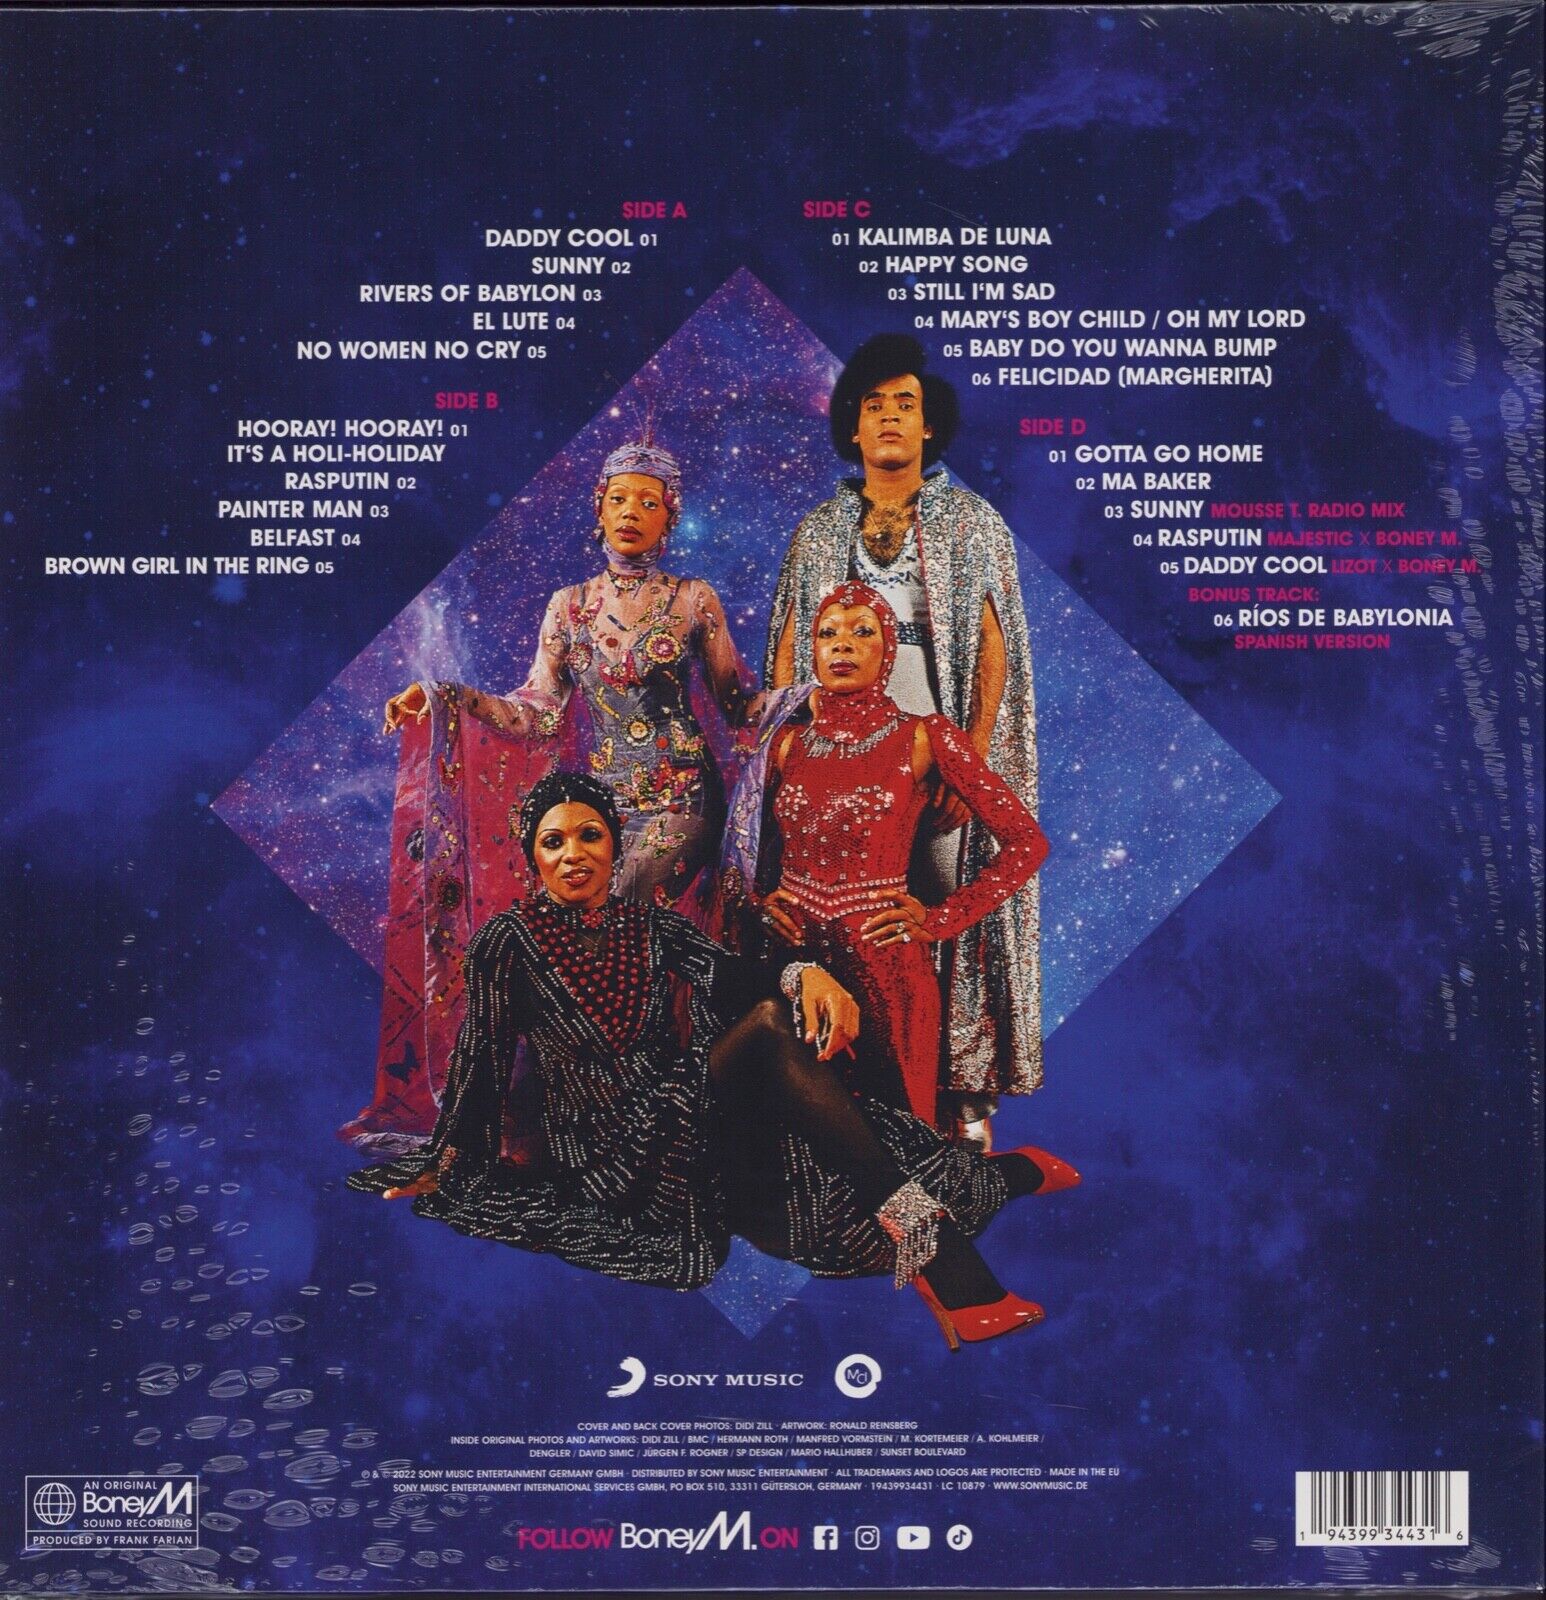 Boney M. ‎- The Magic Of Boney M Colored Vinyl 2LP Special Edition